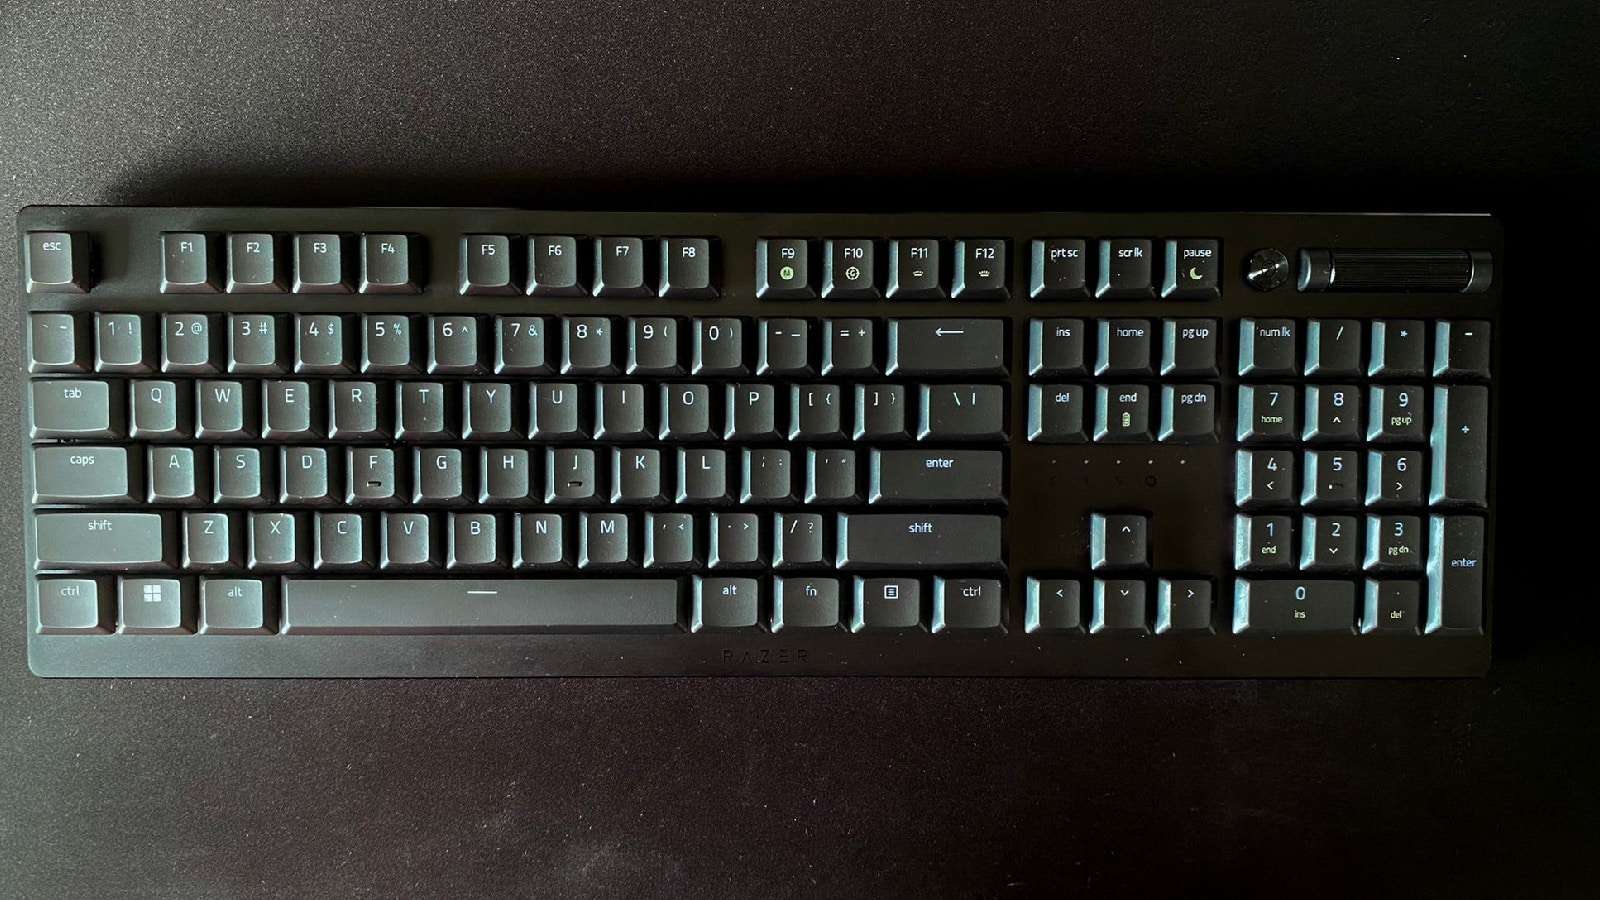 Deathstalker V2 gaming keyboard with a black background